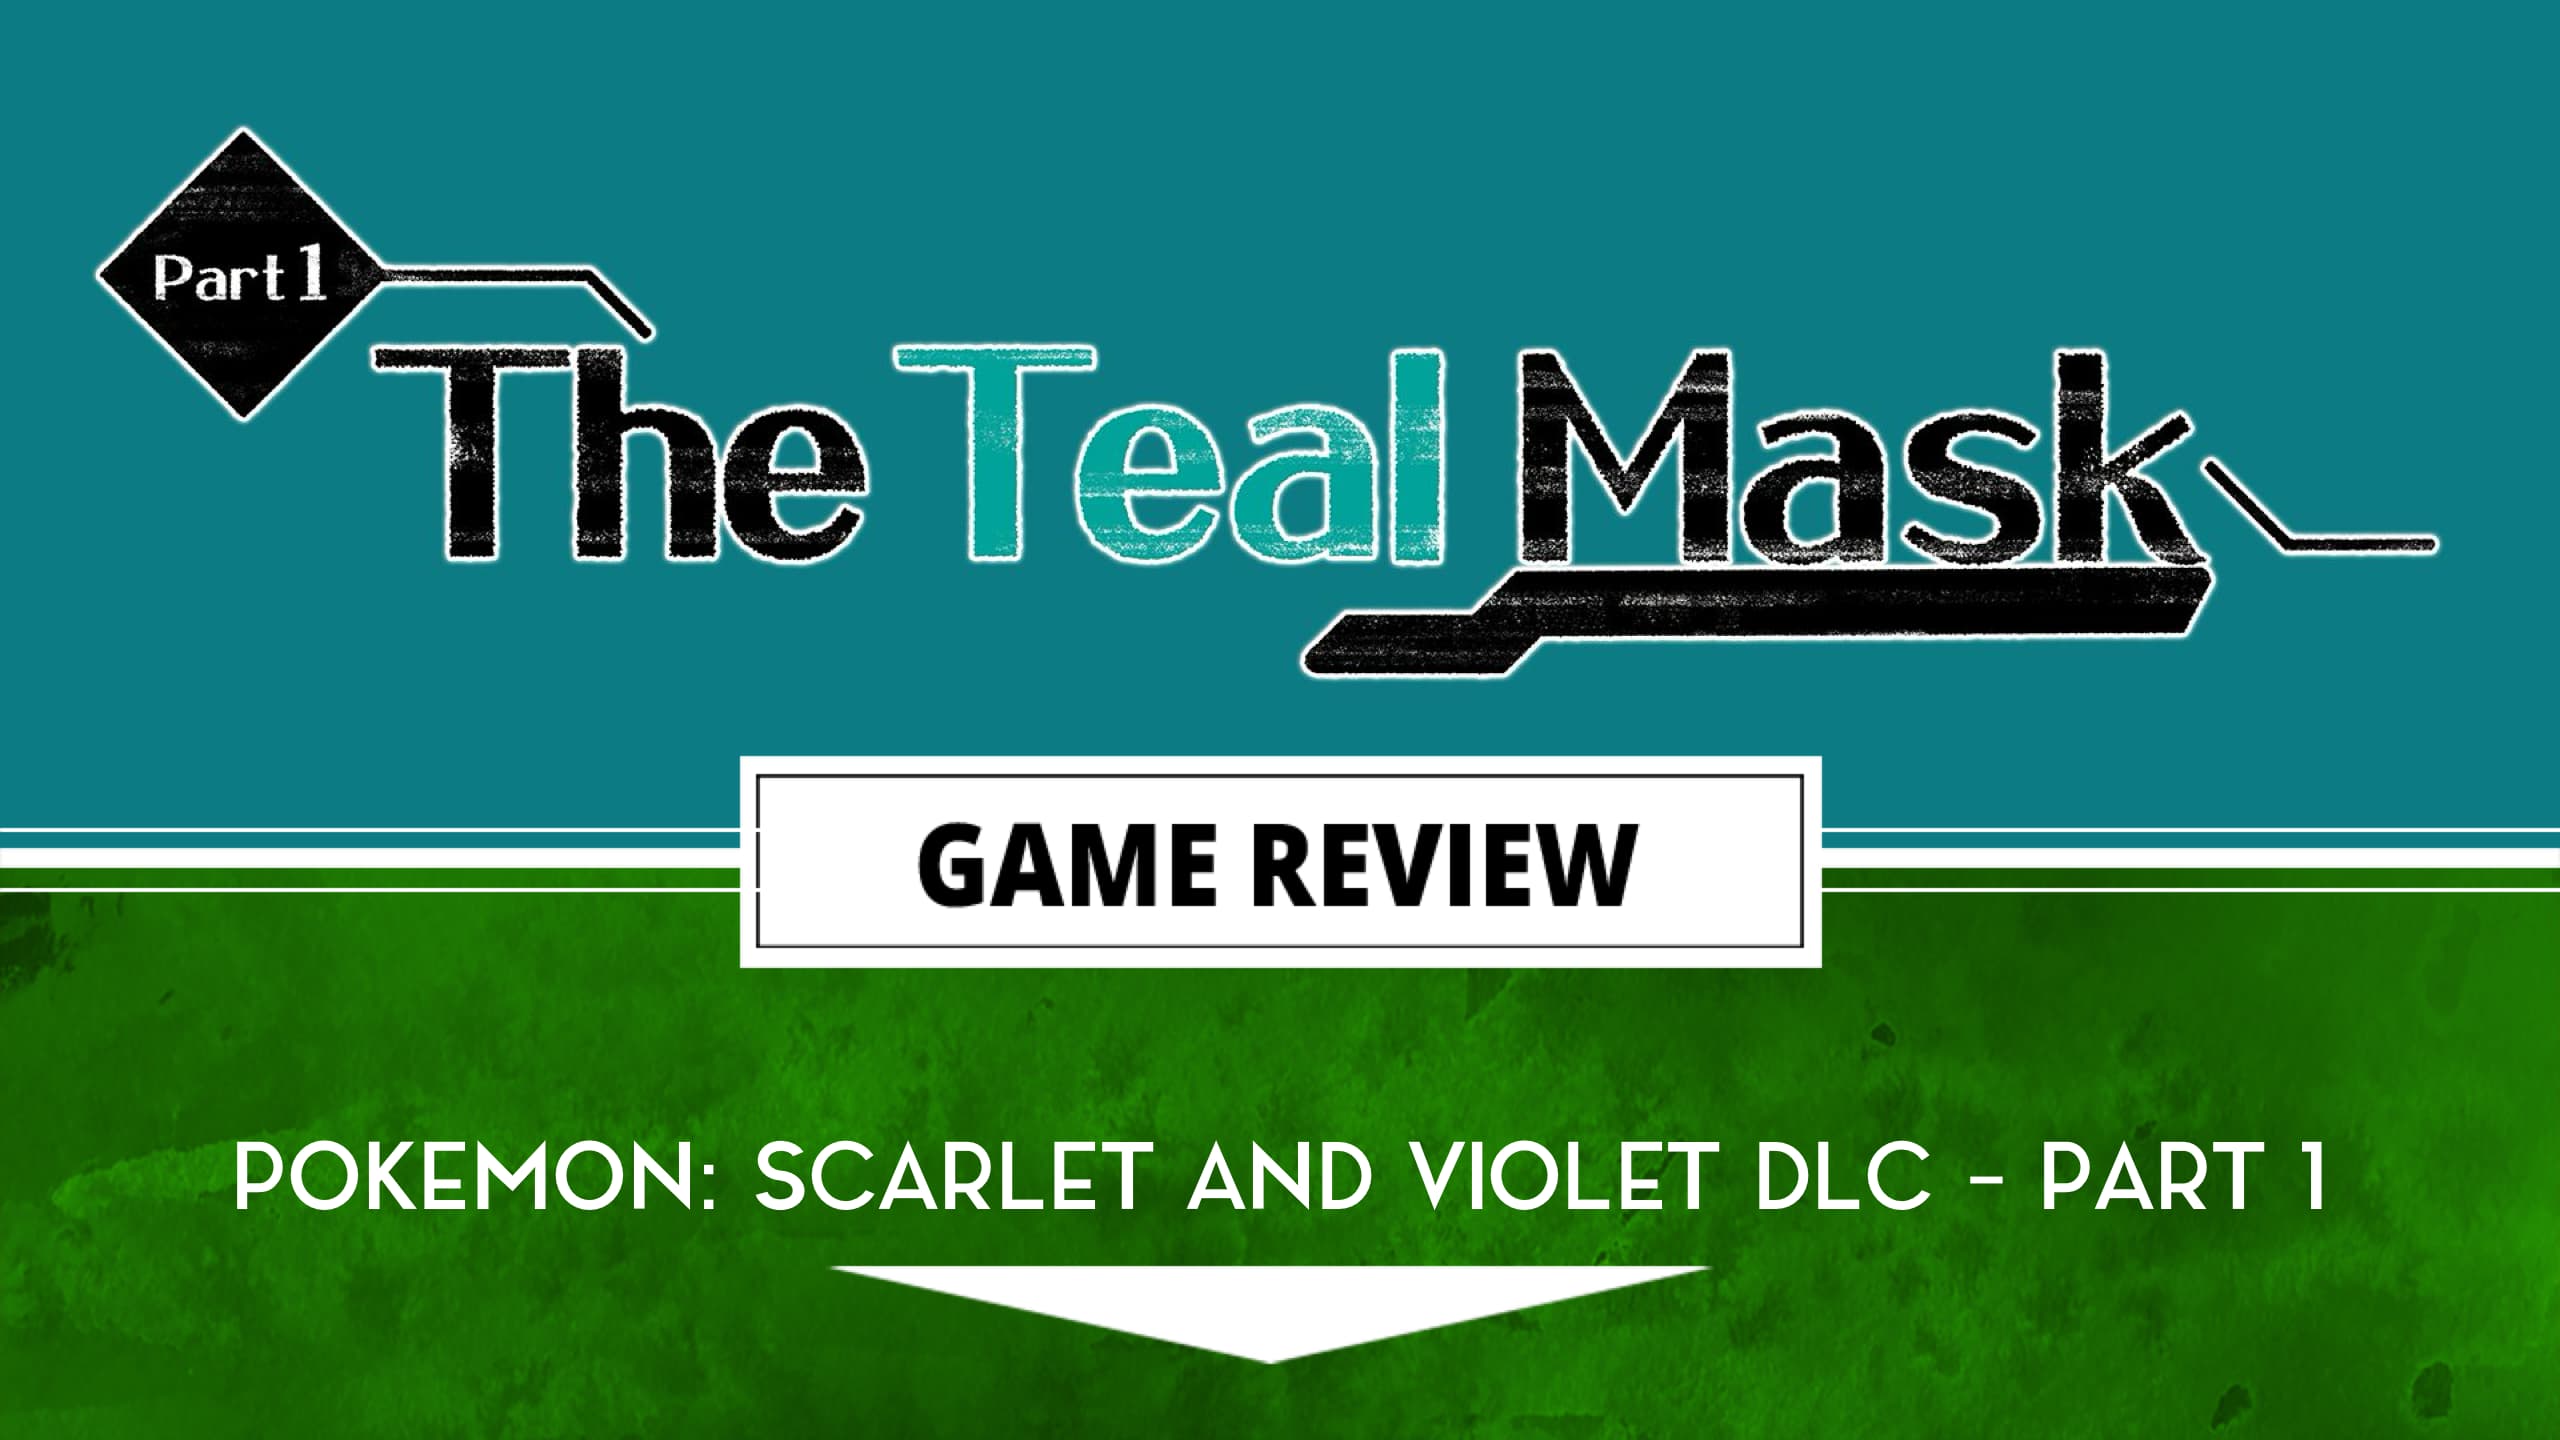 Review  Pokémon Scarlet & Violet: The Teal Mask